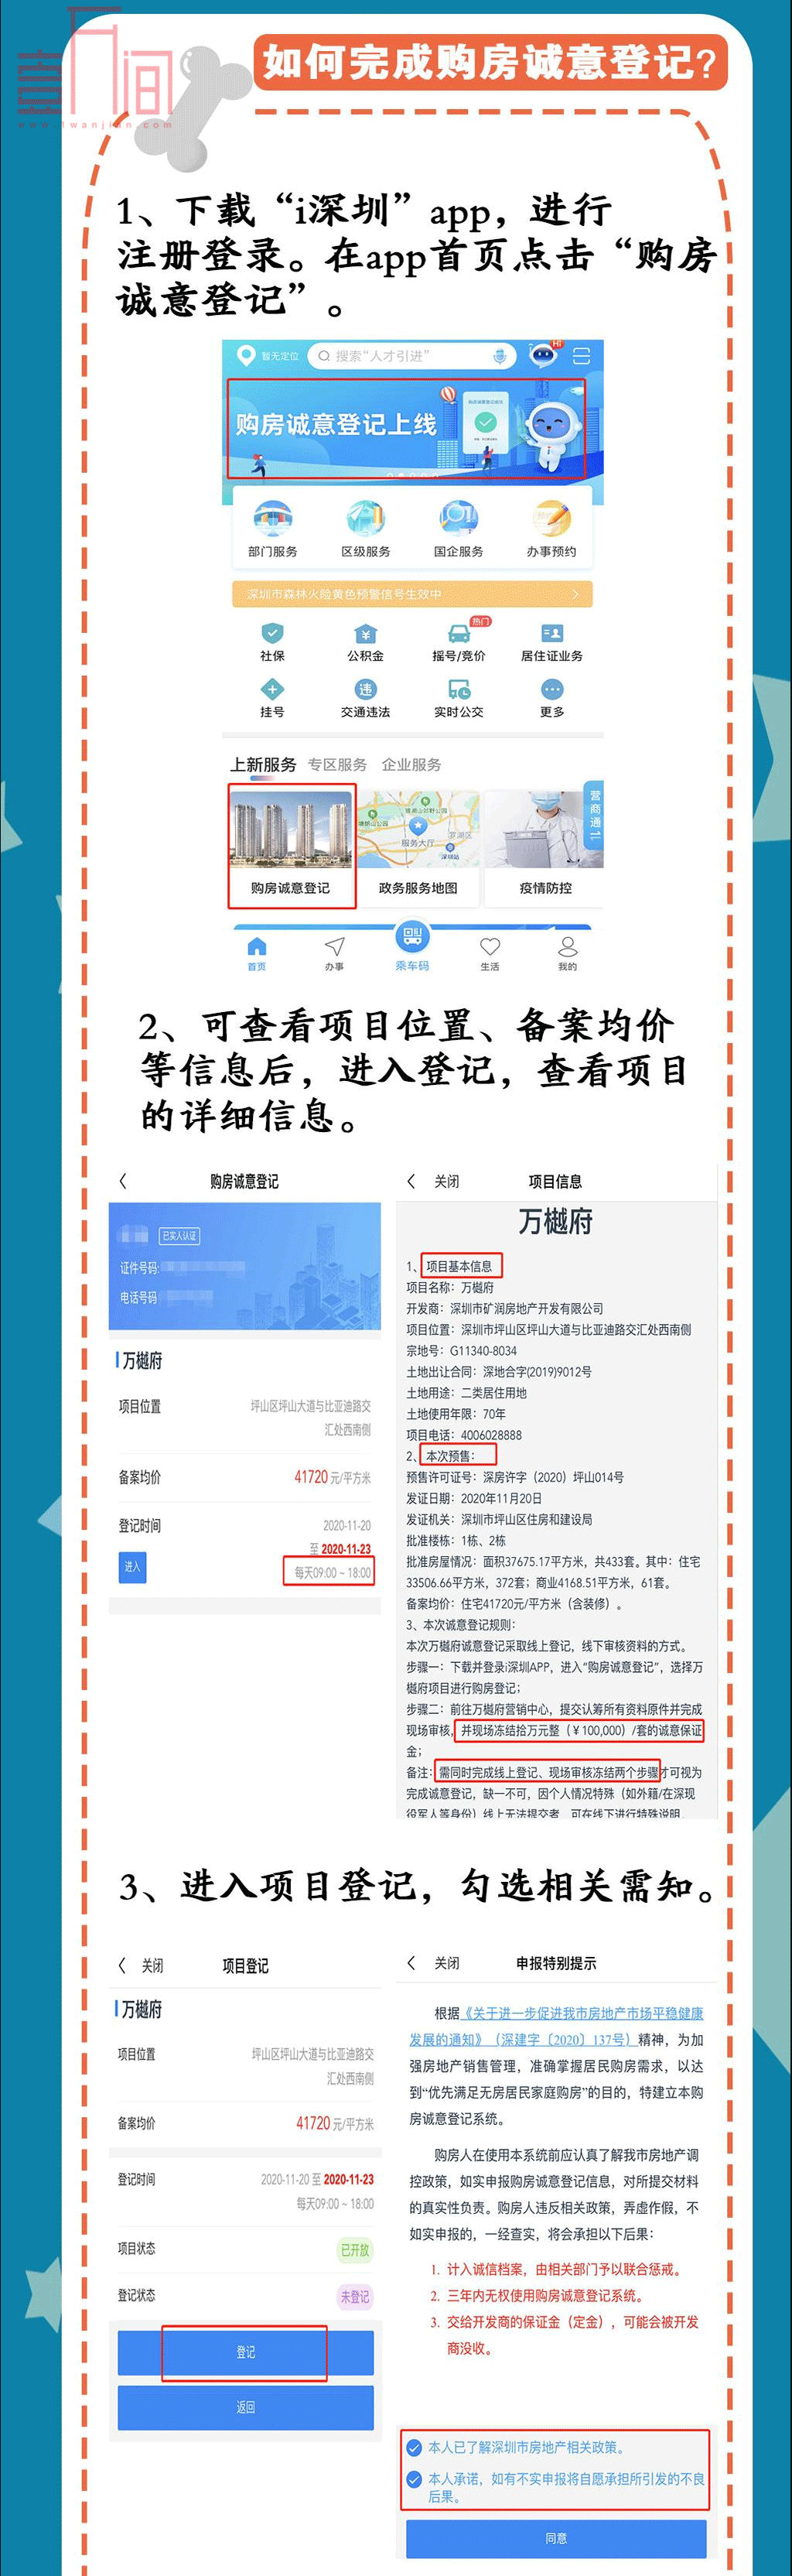 深圳上线“购房诚意登记”， 一图教你如何上“i深圳”申报